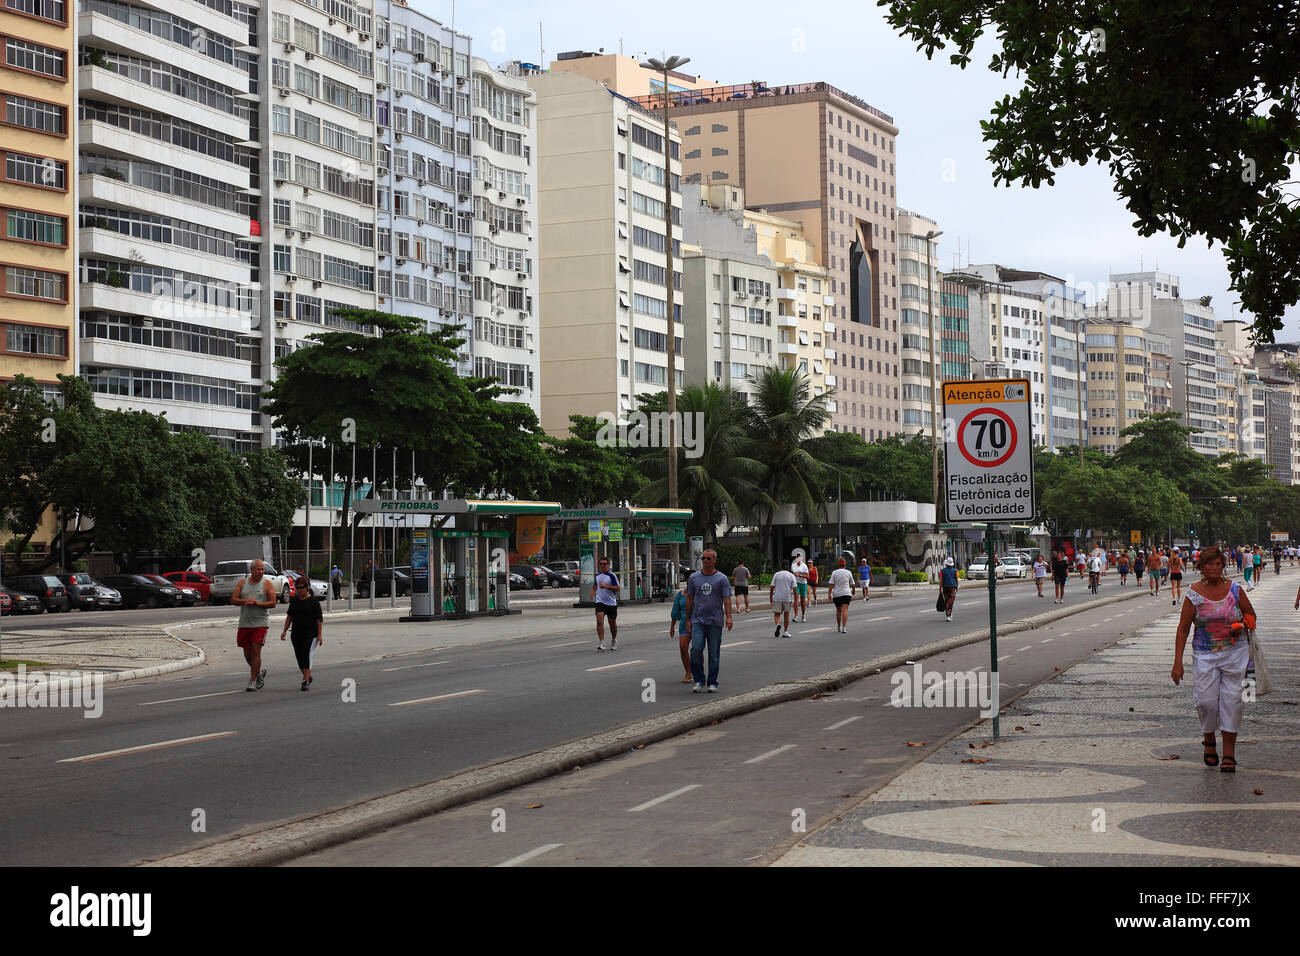 The street Avenida Atlantica at the Copacobana, Rio de Janeiro, Brazil Stock Photo